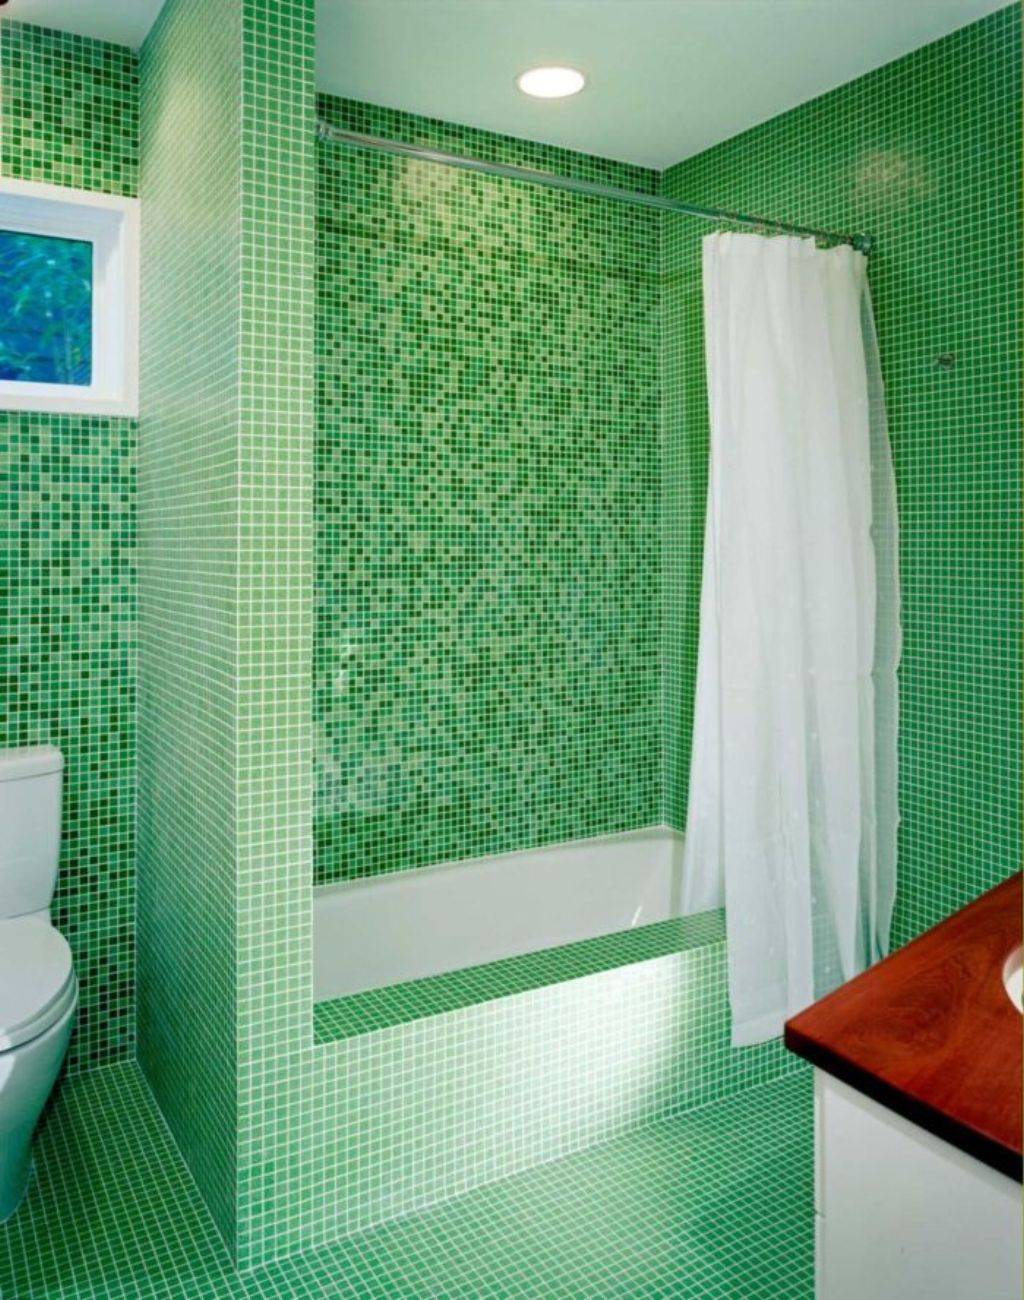 5 бюджетных вариантов отделки стен в ванной комнате